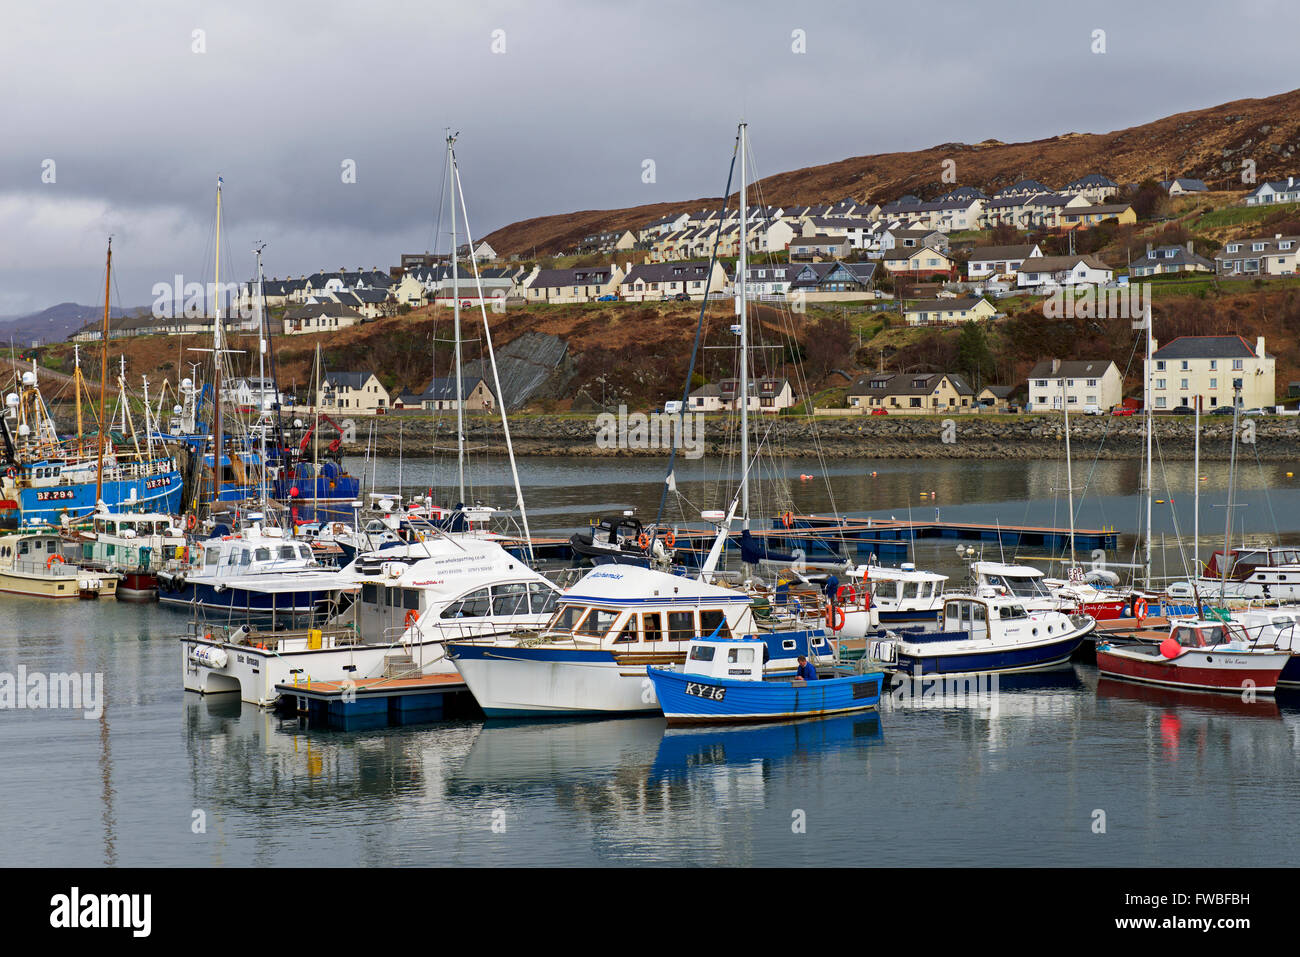 Bateaux dans le port et marina, Mallaig, Highlands, Scotland UK Banque D'Images